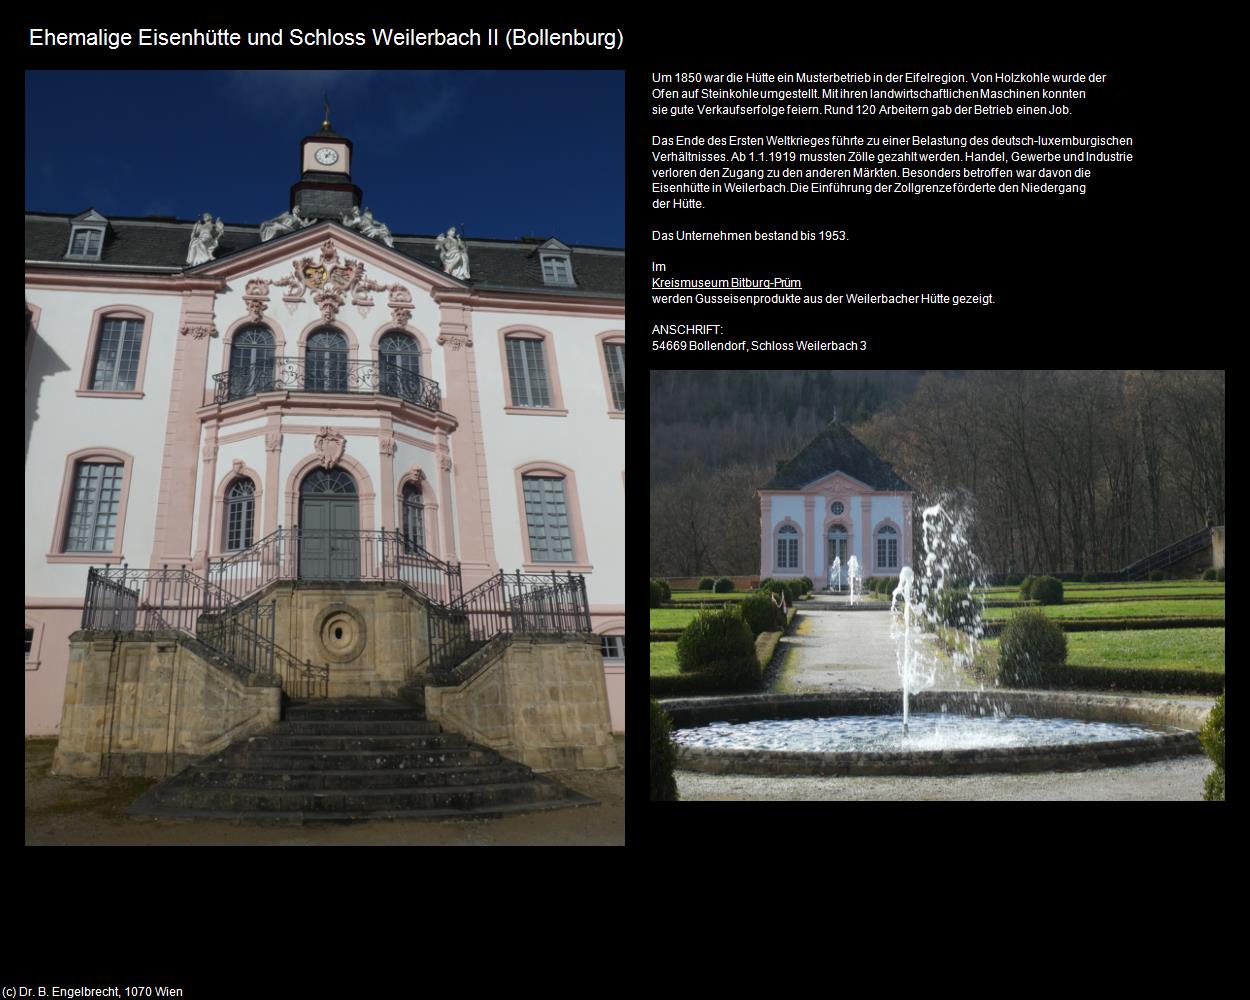 Ehem. Eisenhütte und Schloss Weilerbach II (Bollenburg (DEU-RP)) in RHEINLAND-PFALZ und SAARLAND(c)B.Engelbrecht